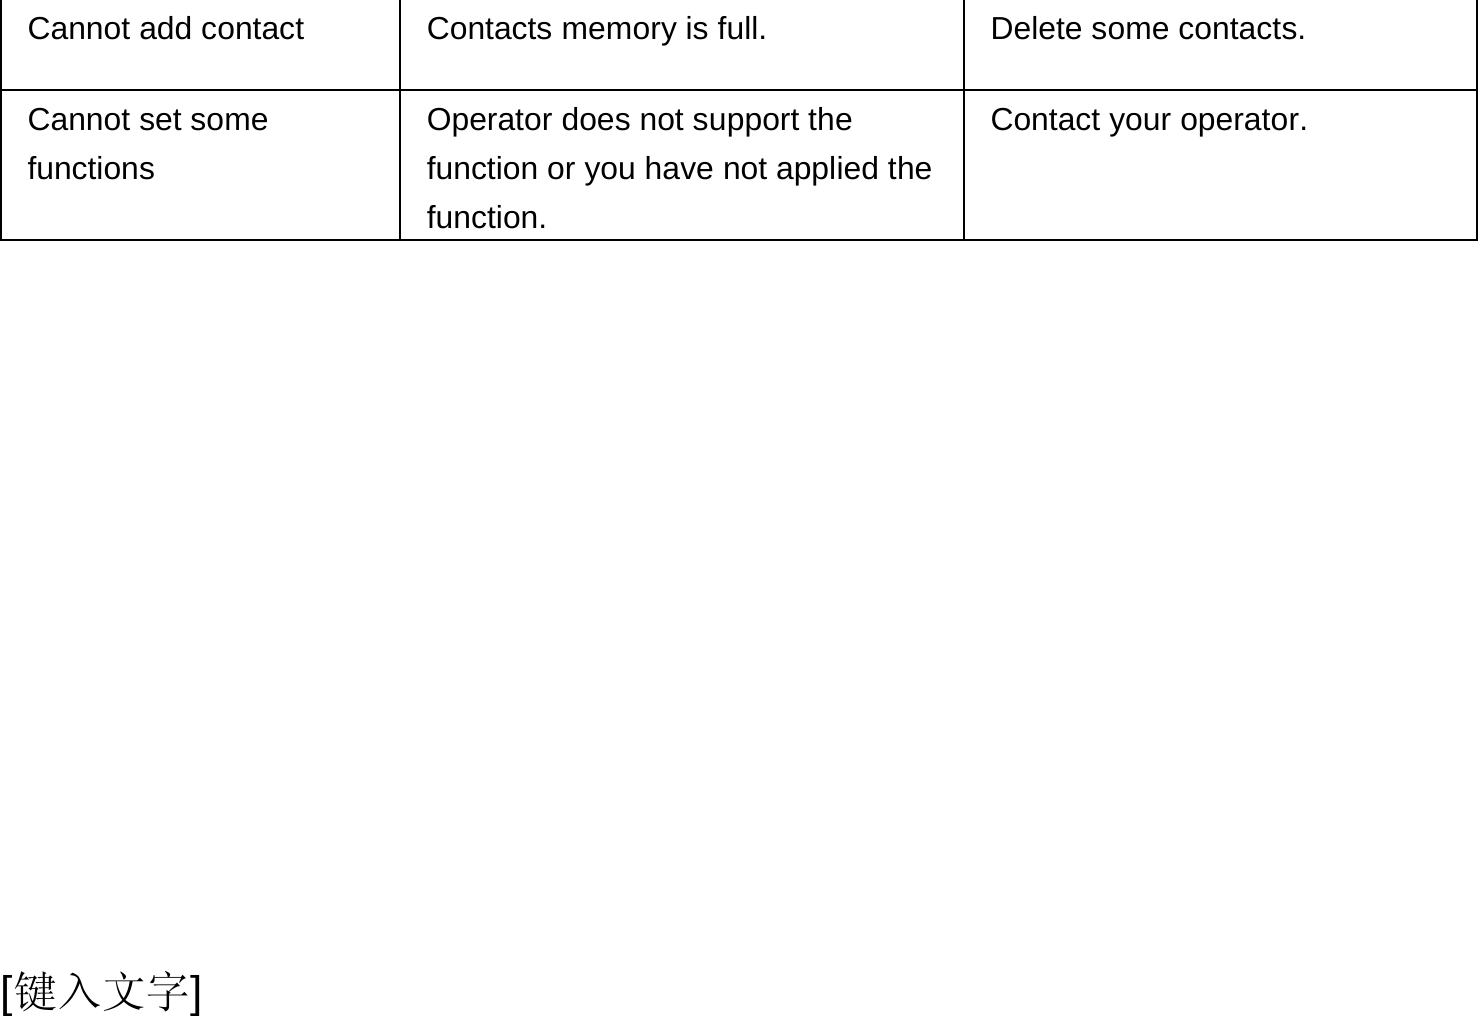  [键入文字] Cannot add contact  Contacts memory is full.  Delete some contacts. Cannot set some functions Operator does not support the function or you have not applied the function. Contact your operator.  